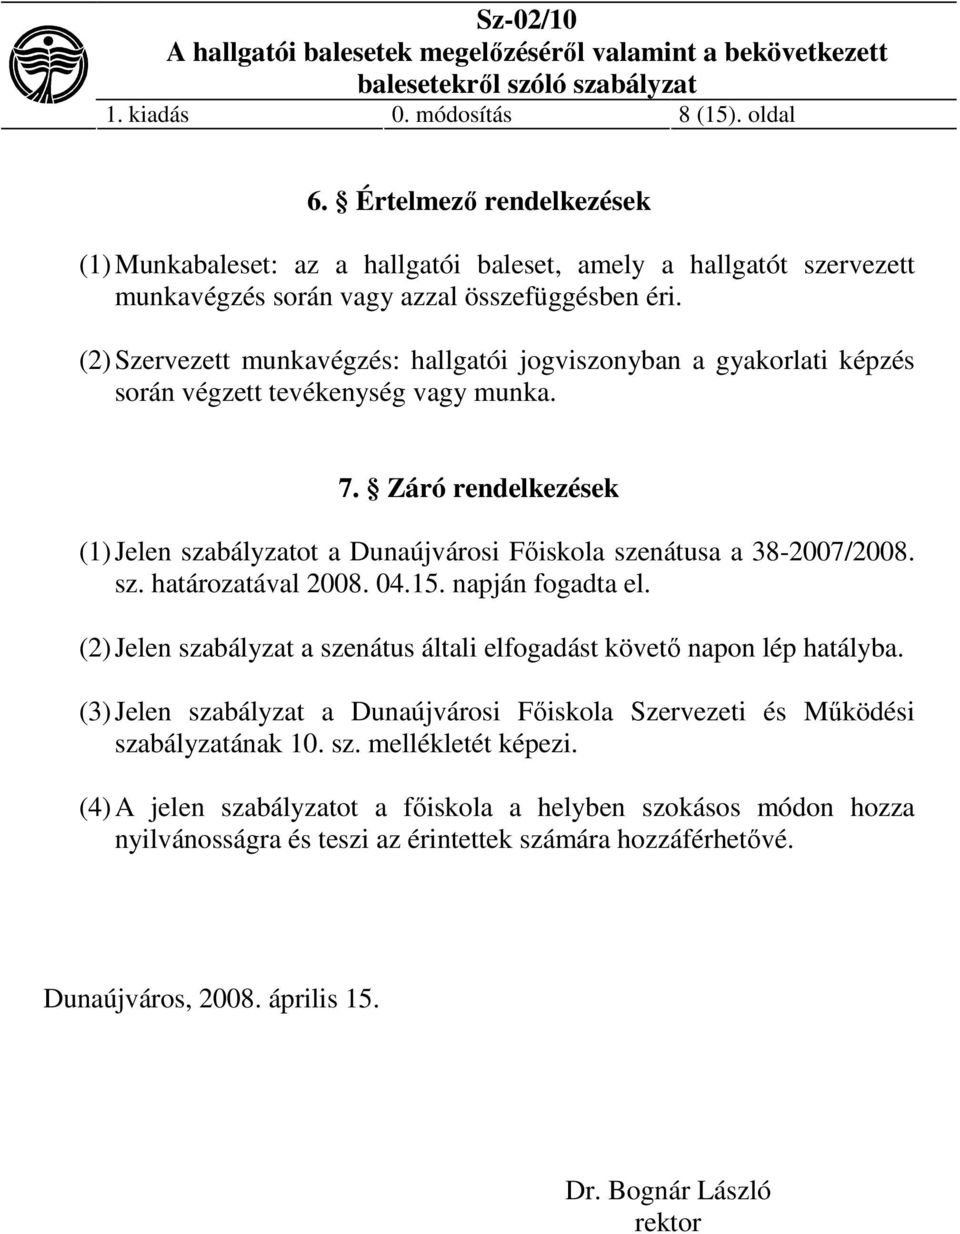 Záró rendelkezések (1) Jelen szabályzatot a Dunaújvárosi Főiskola szenátusa a 38-2007/2008. sz. határozatával 2008. 04.15. napján fogadta el.